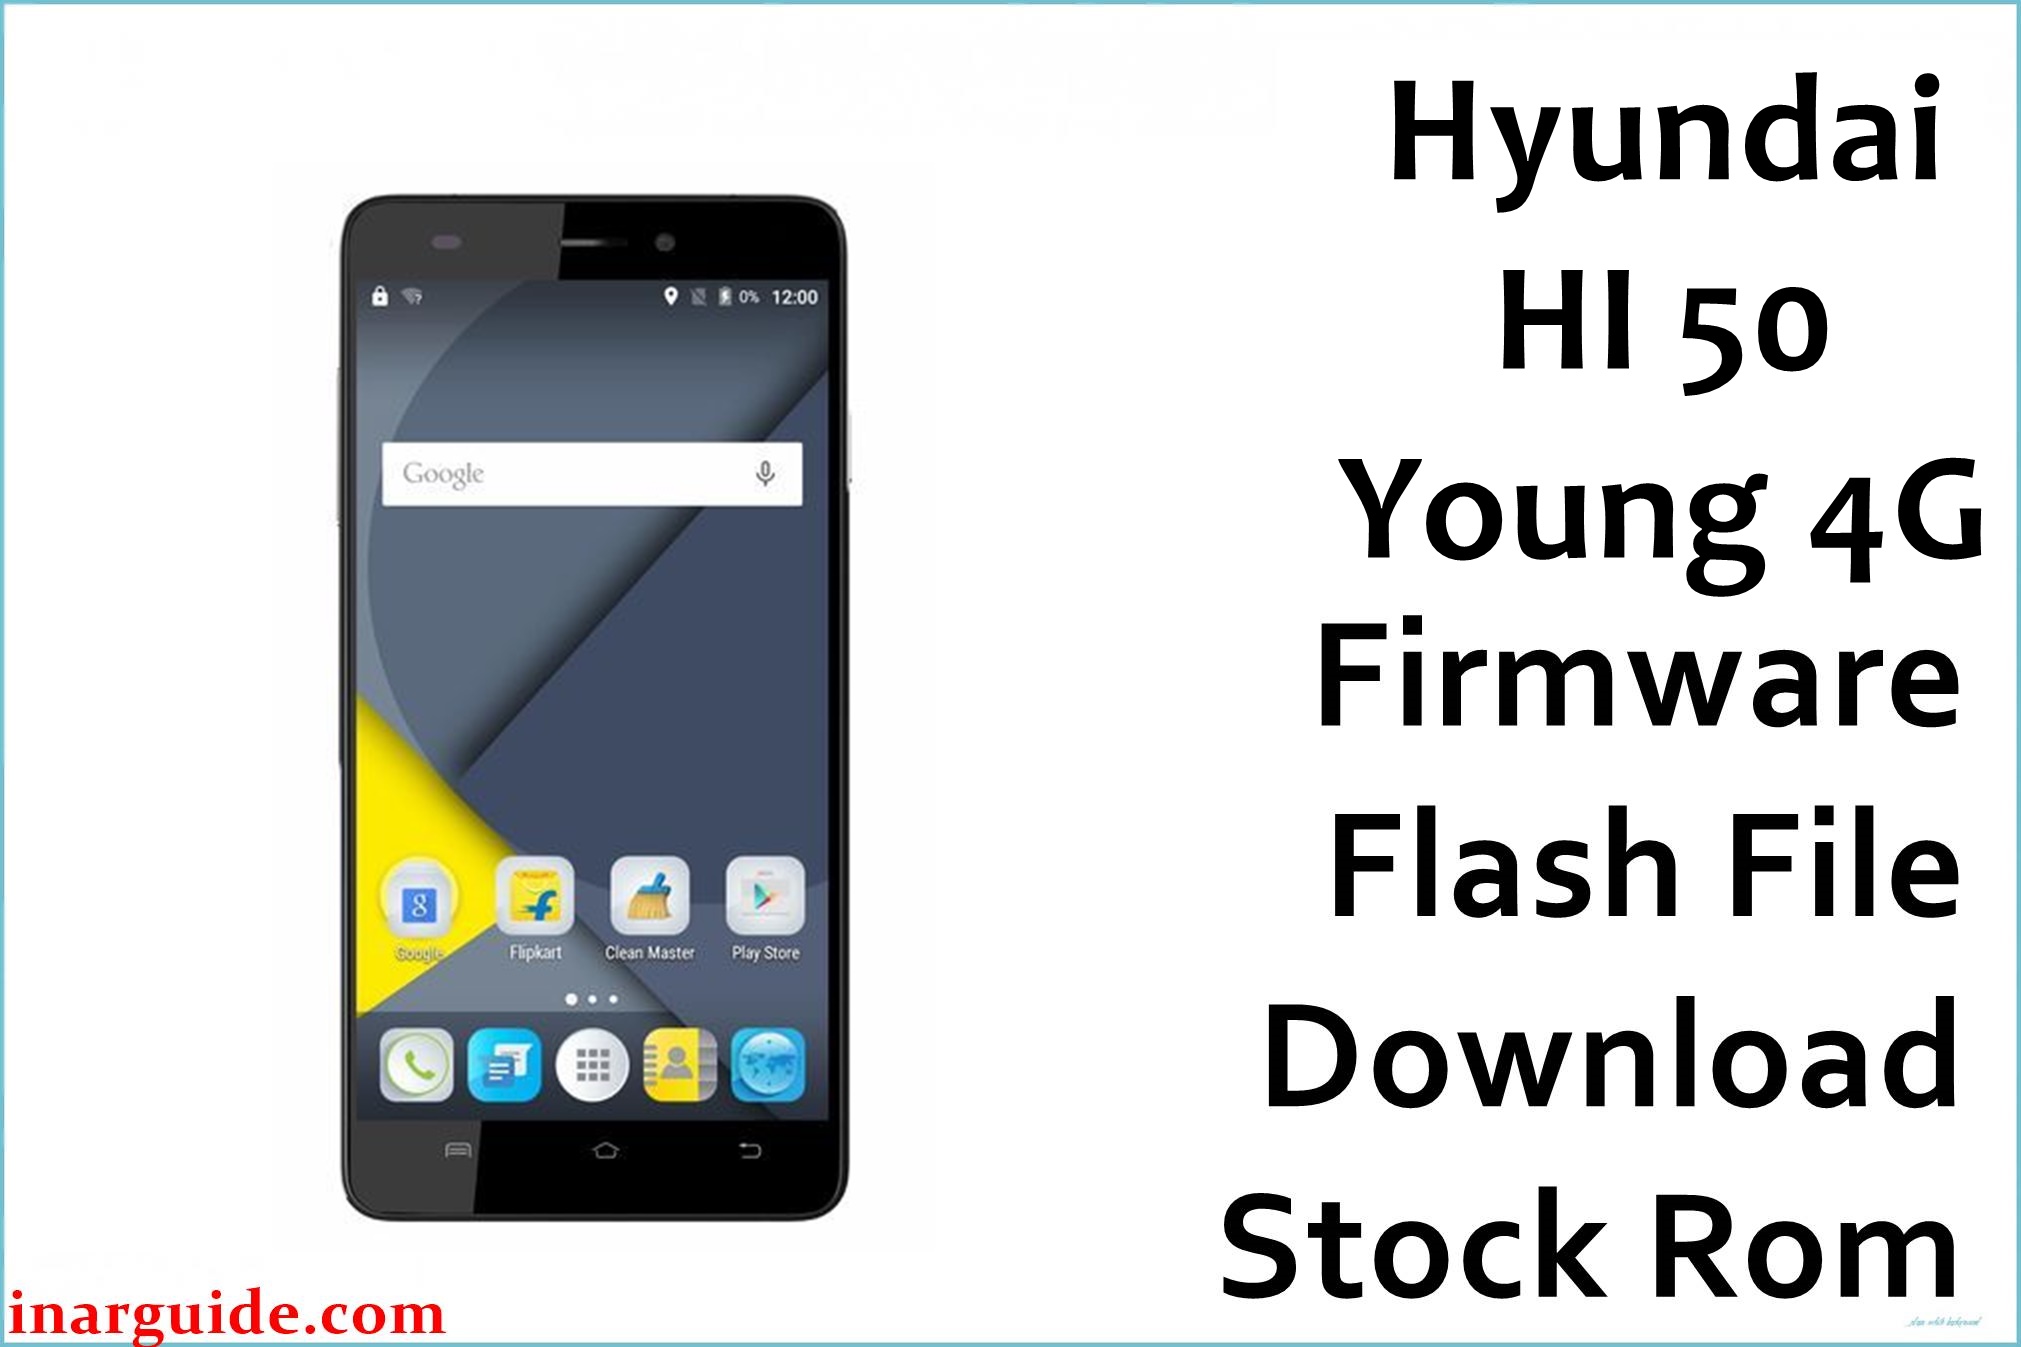 Hyundai HI 50 Young 4G